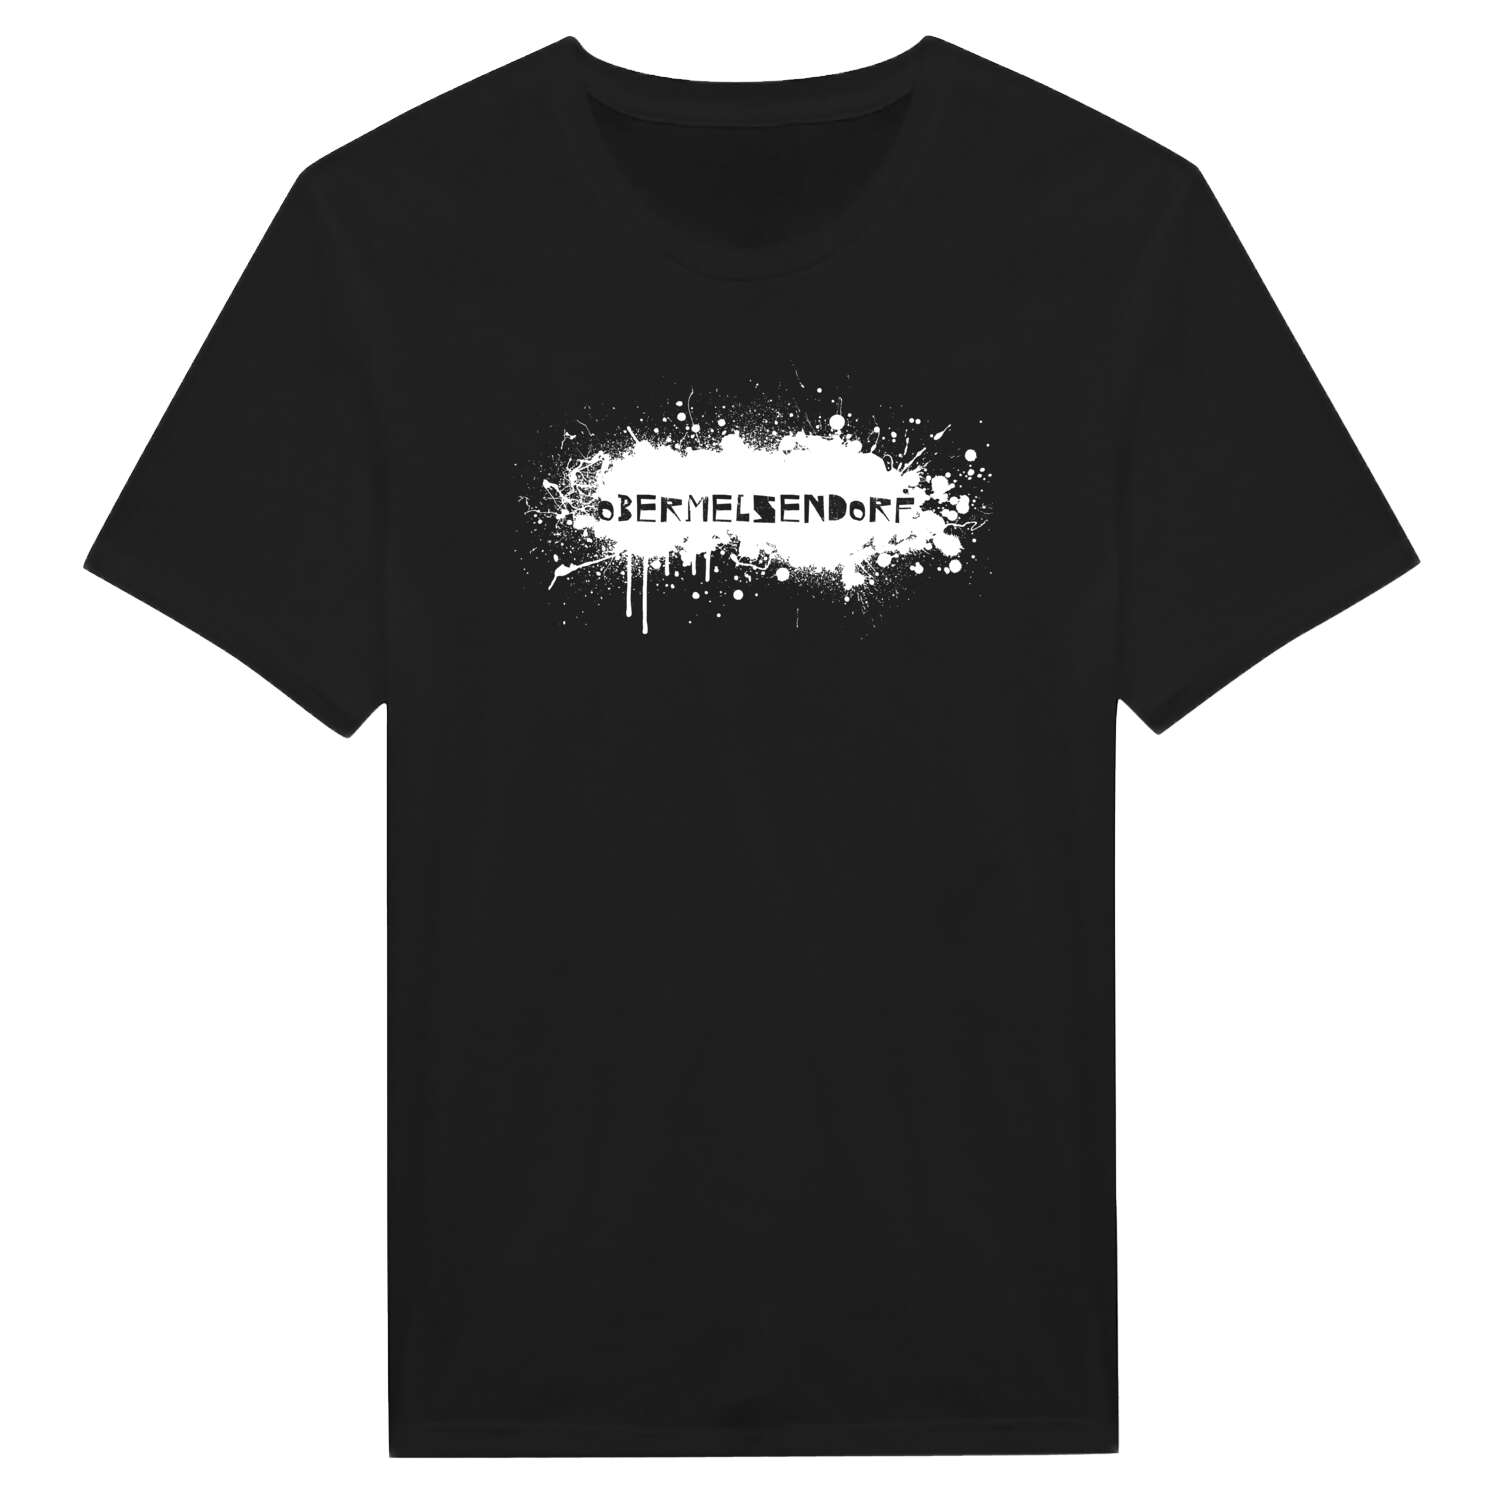 Obermelsendorf T-Shirt »Paint Splash Punk«